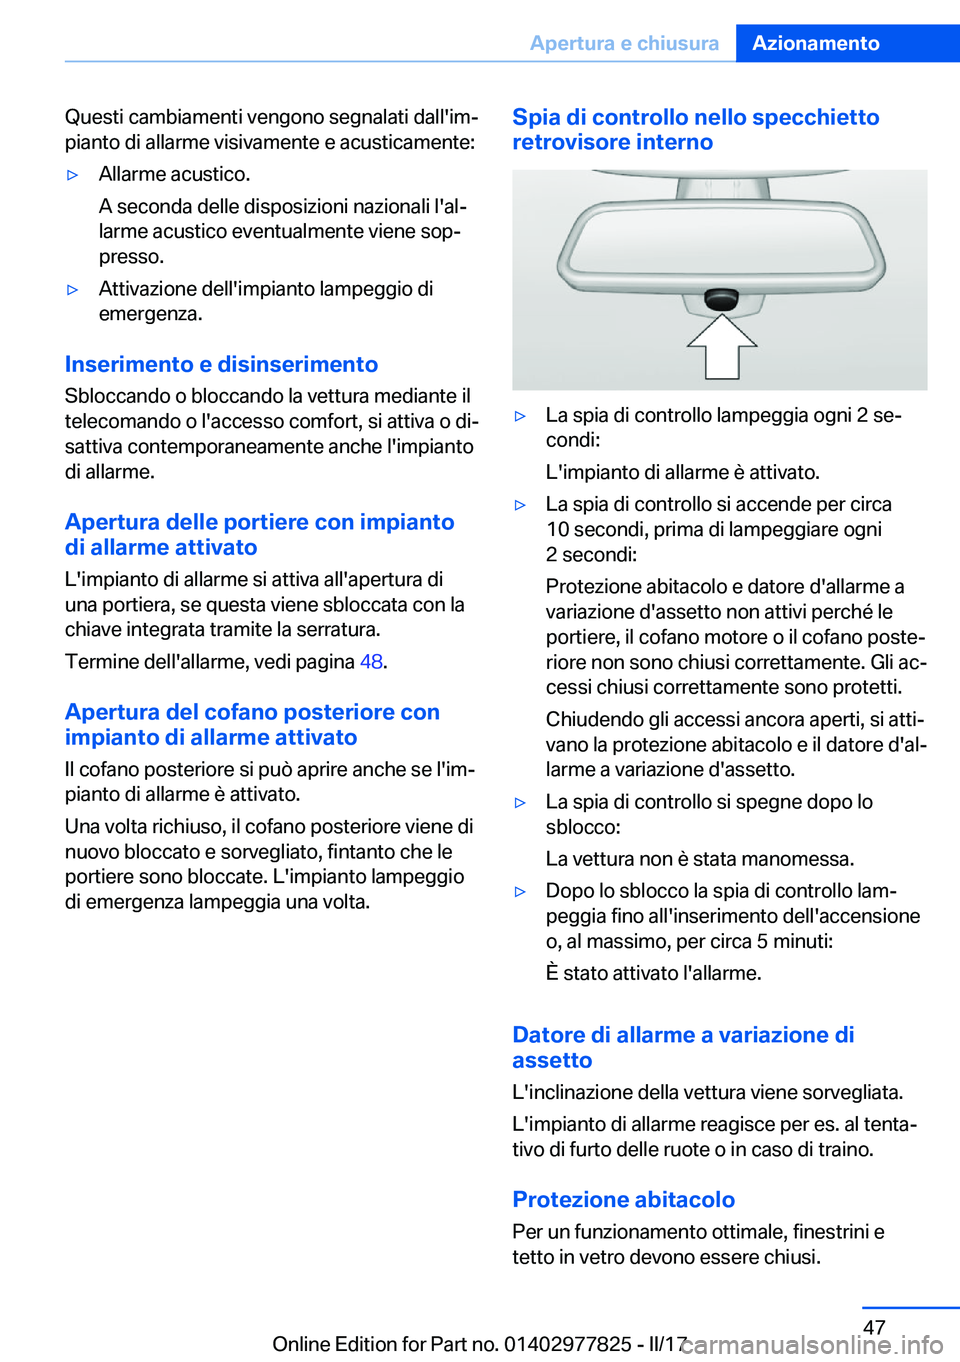 BMW X3 2017  Libretti Di Uso E manutenzione (in Italian) �Q�u�e�s�t�i� �c�a�m�b�i�a�m�e�n�t�i� �v�e�n�g�o�n�o� �s�e�g�n�a�l�a�t�i� �d�a�l�l�'�i�mª�p�i�a�n�t�o� �d�i� �a�l�l�a�r�m�e� �v�i�s�i�v�a�m�e�n�t�e� �e� �a�c�u�s�t�i�c�a�m�e�n�t�e�:'y�A�l�l�